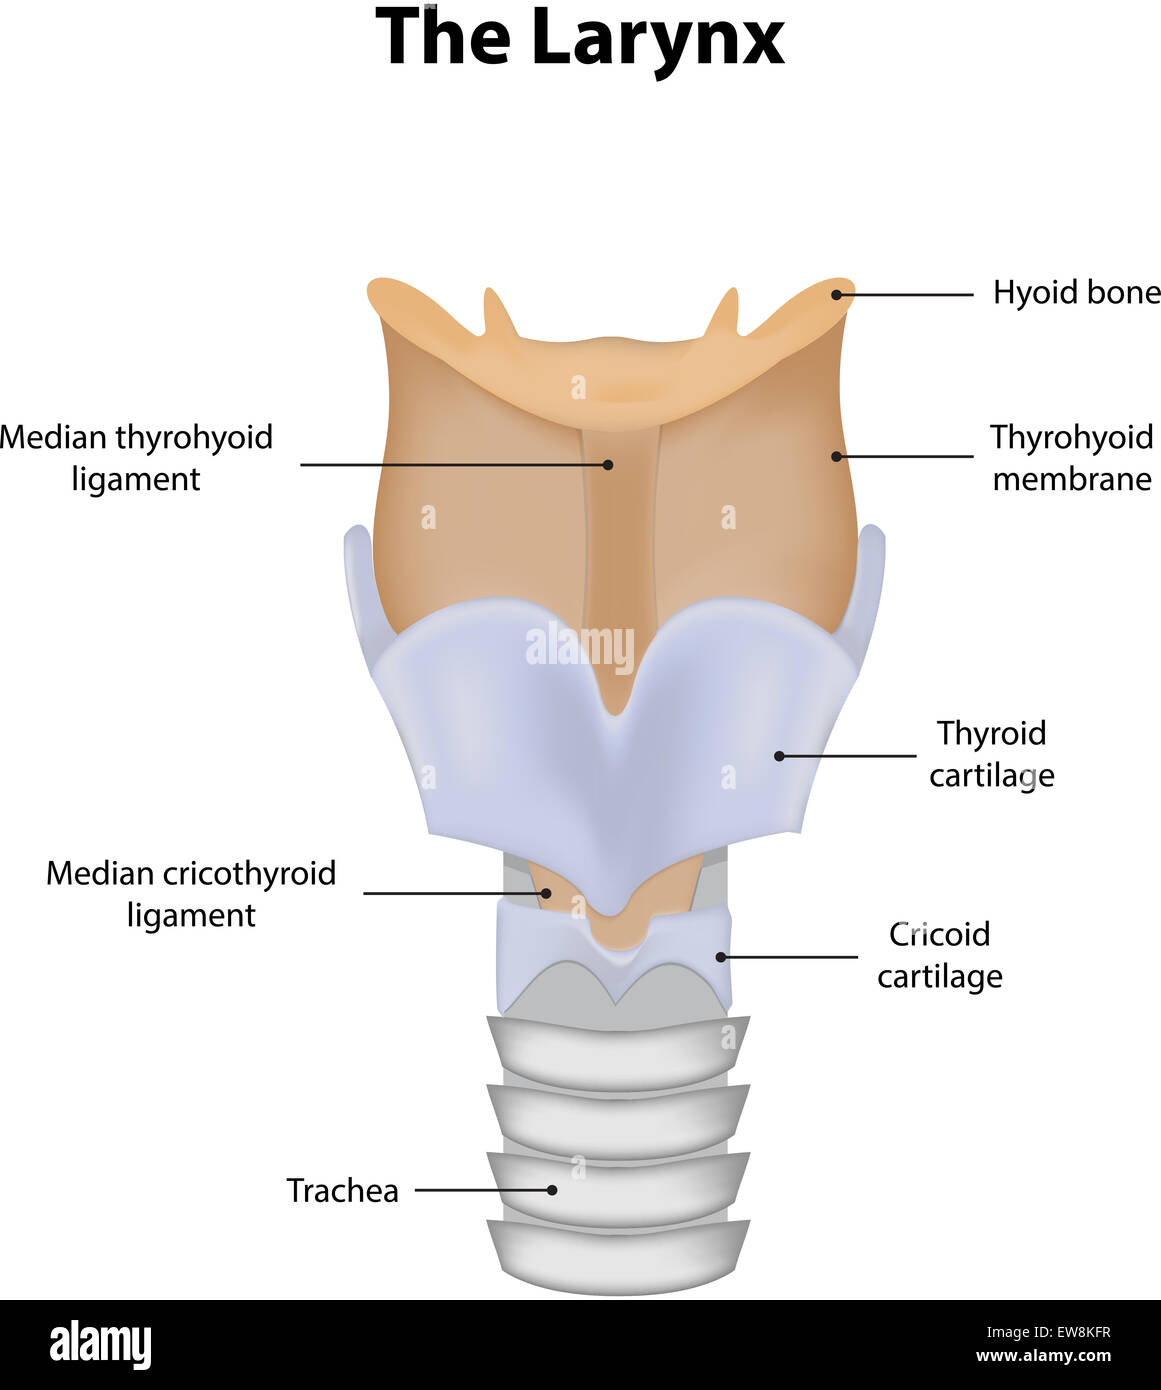 Larynx Labeled Diagram Stock Photo: 84398827 - Alamy